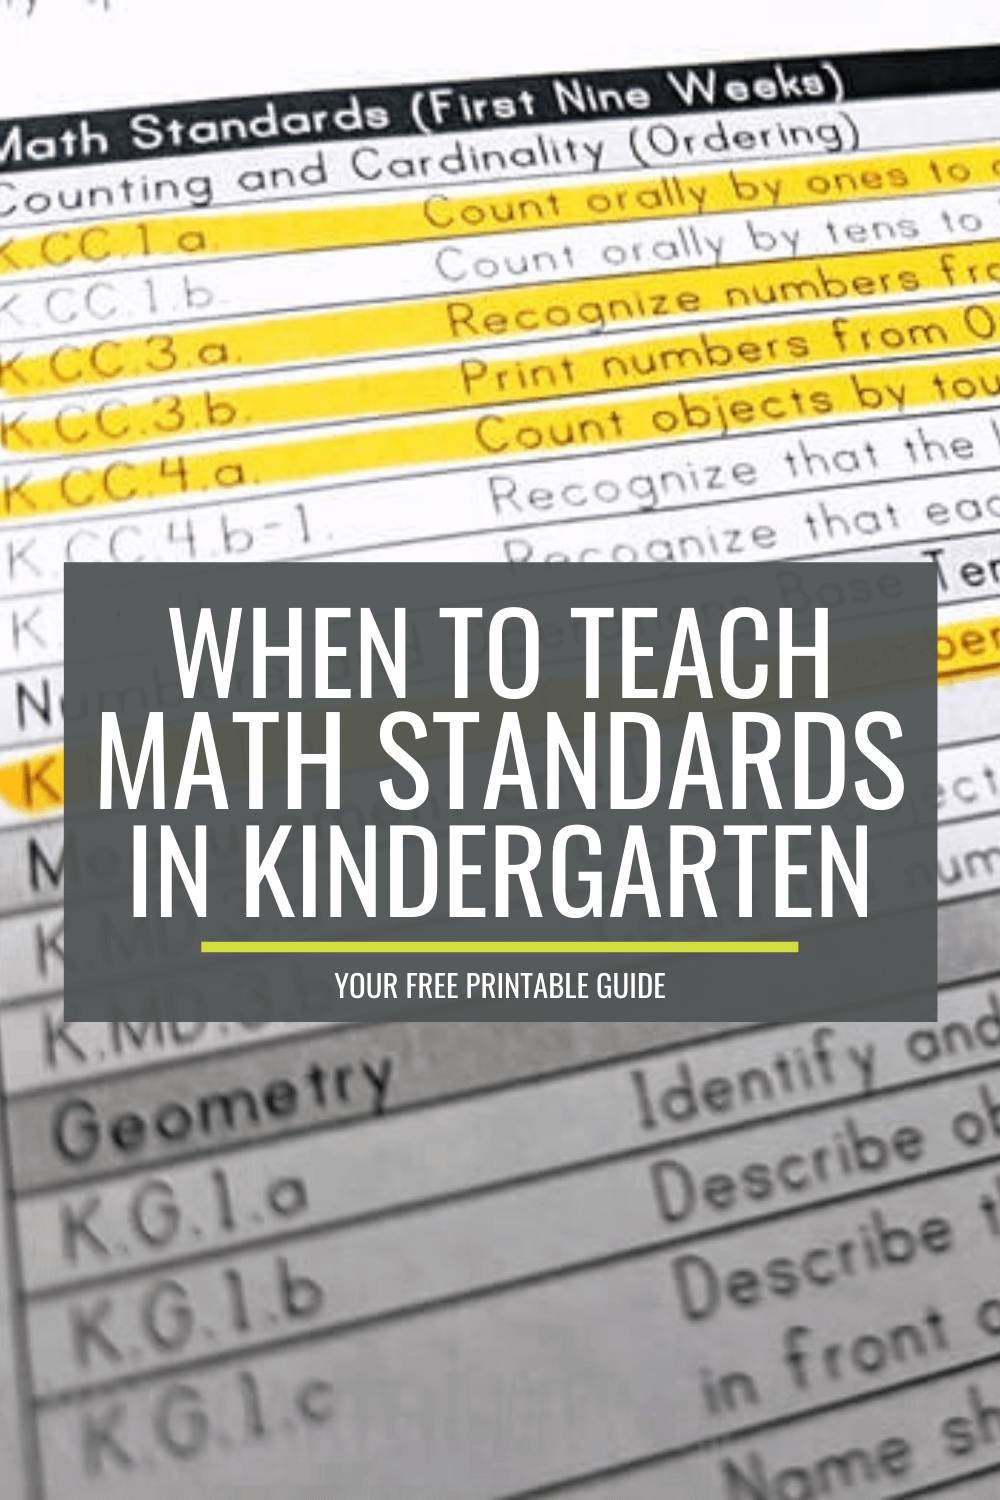 When to Teach Math Standards in Kindergarten